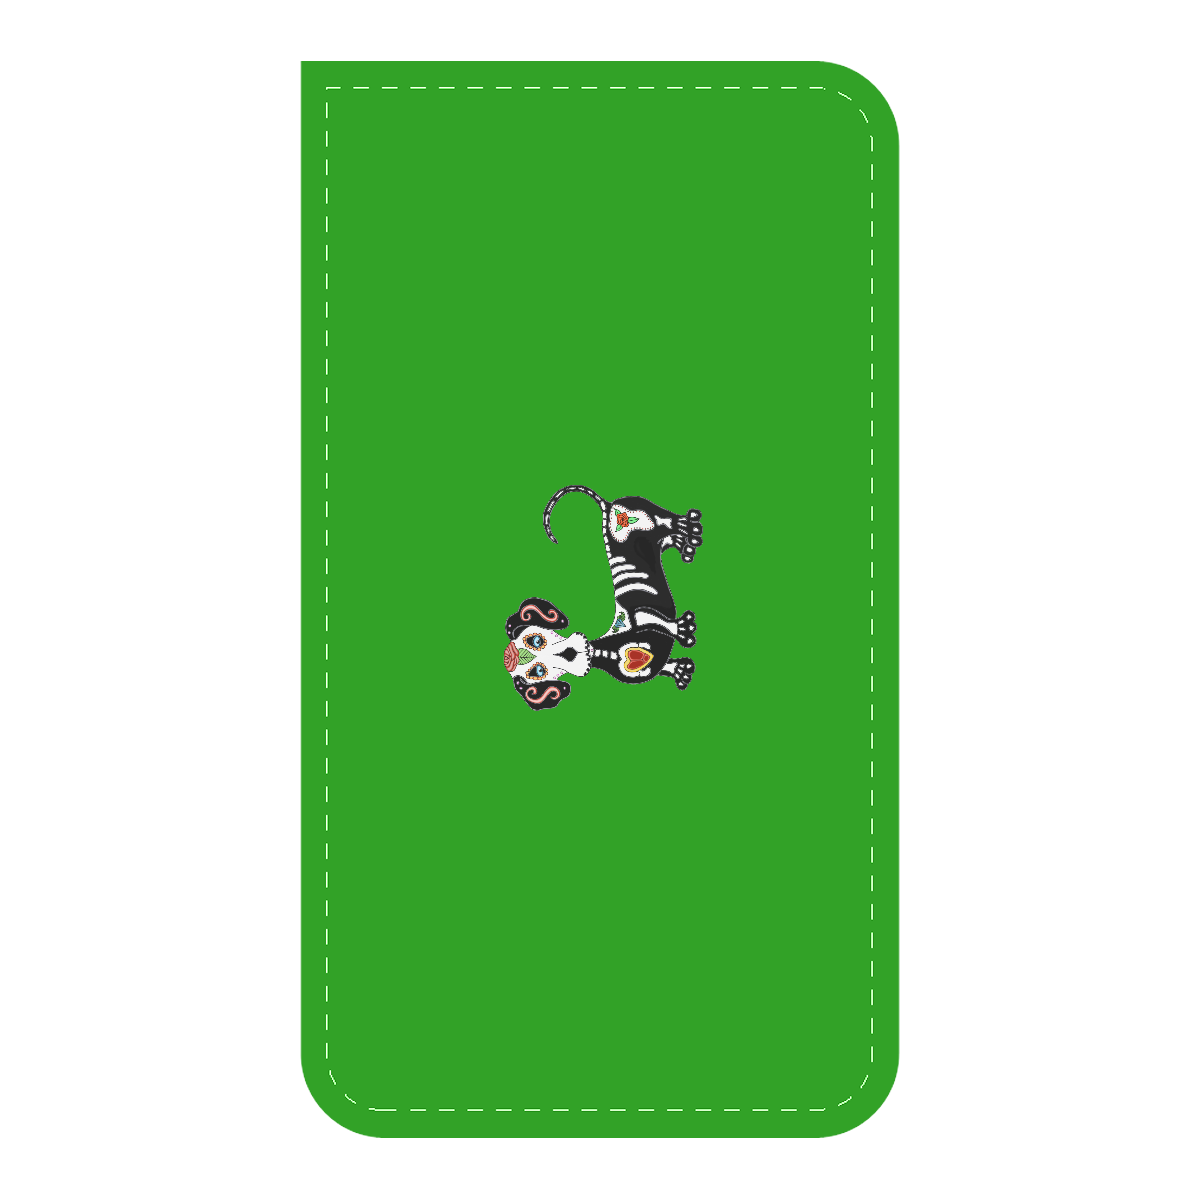 Dachshund Sugar Skull Green Car Seat Belt Cover 7''x12.6''